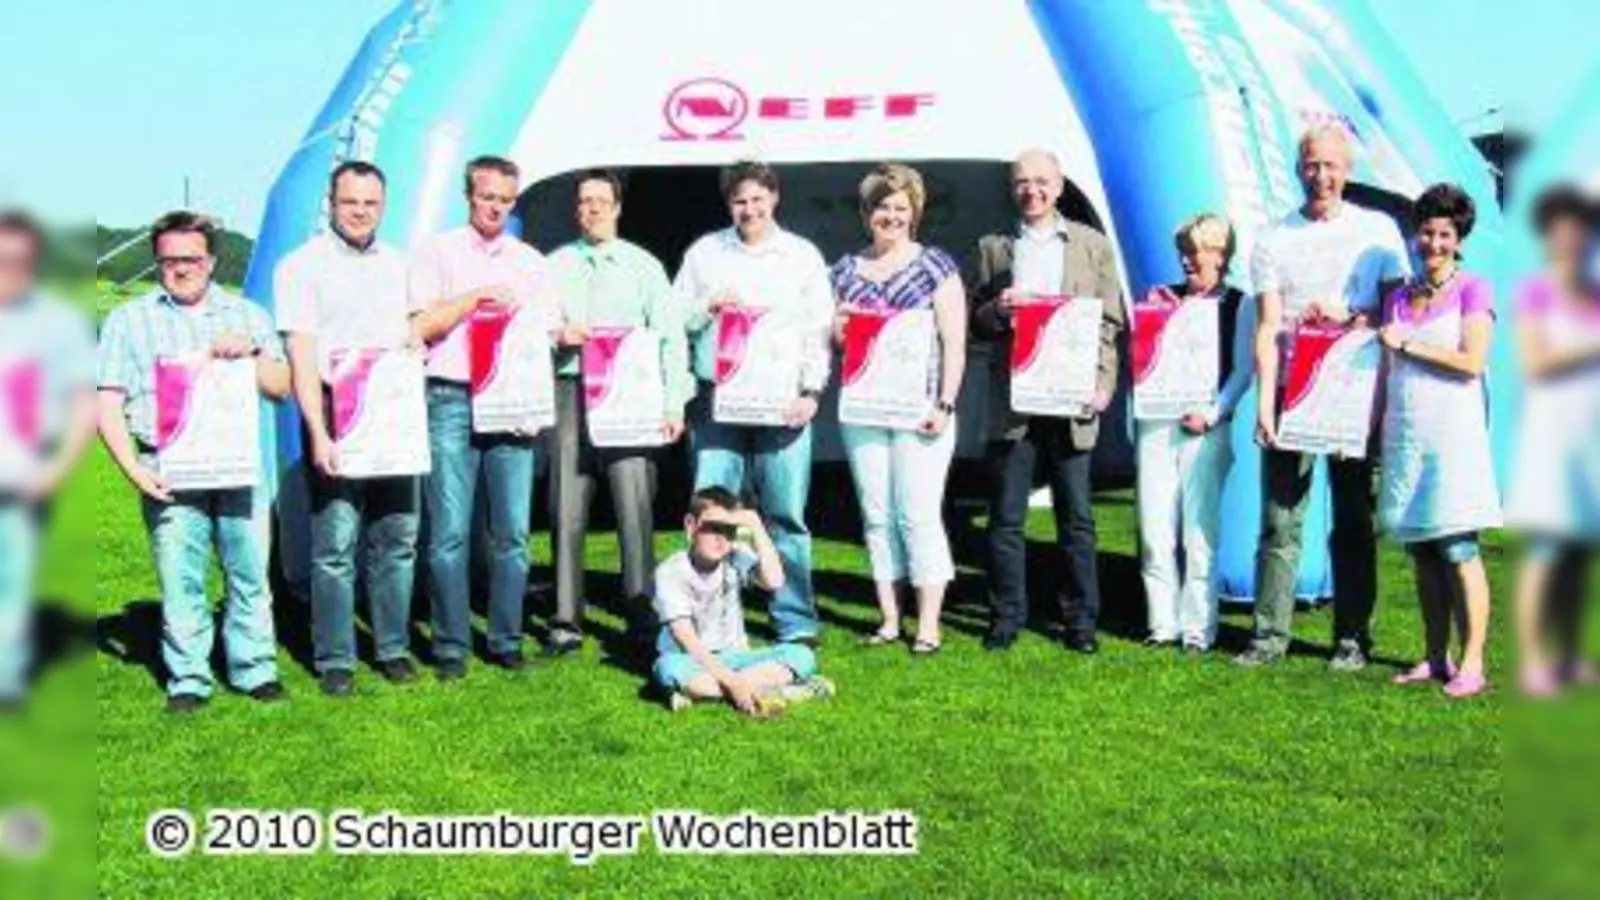 Organisatoren erwarten 500 Teilnehmer zum Lauf rund um die Schaumburg (Foto: tt)